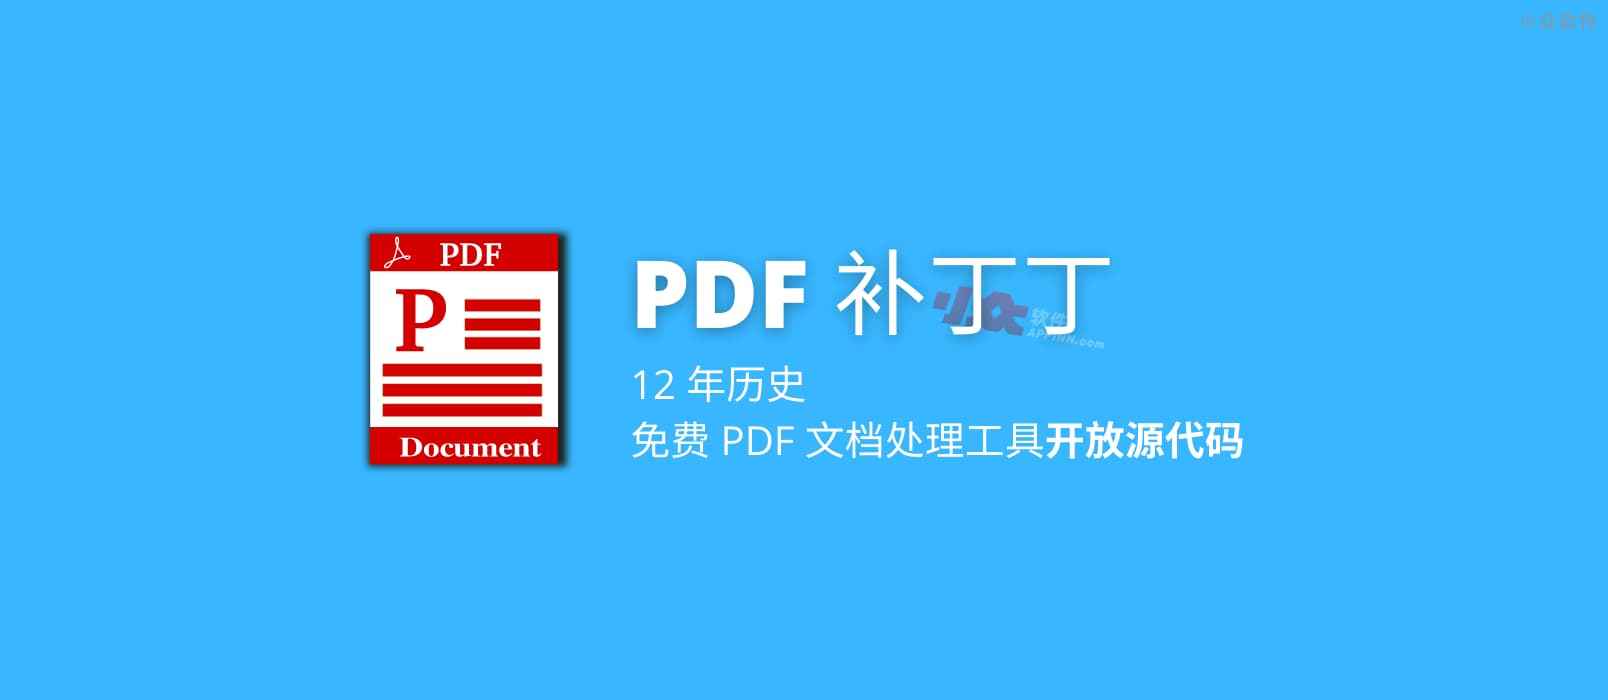 12 年历史，免费 PDF 文档处理工具「PDF 补丁丁」开放源代码 1